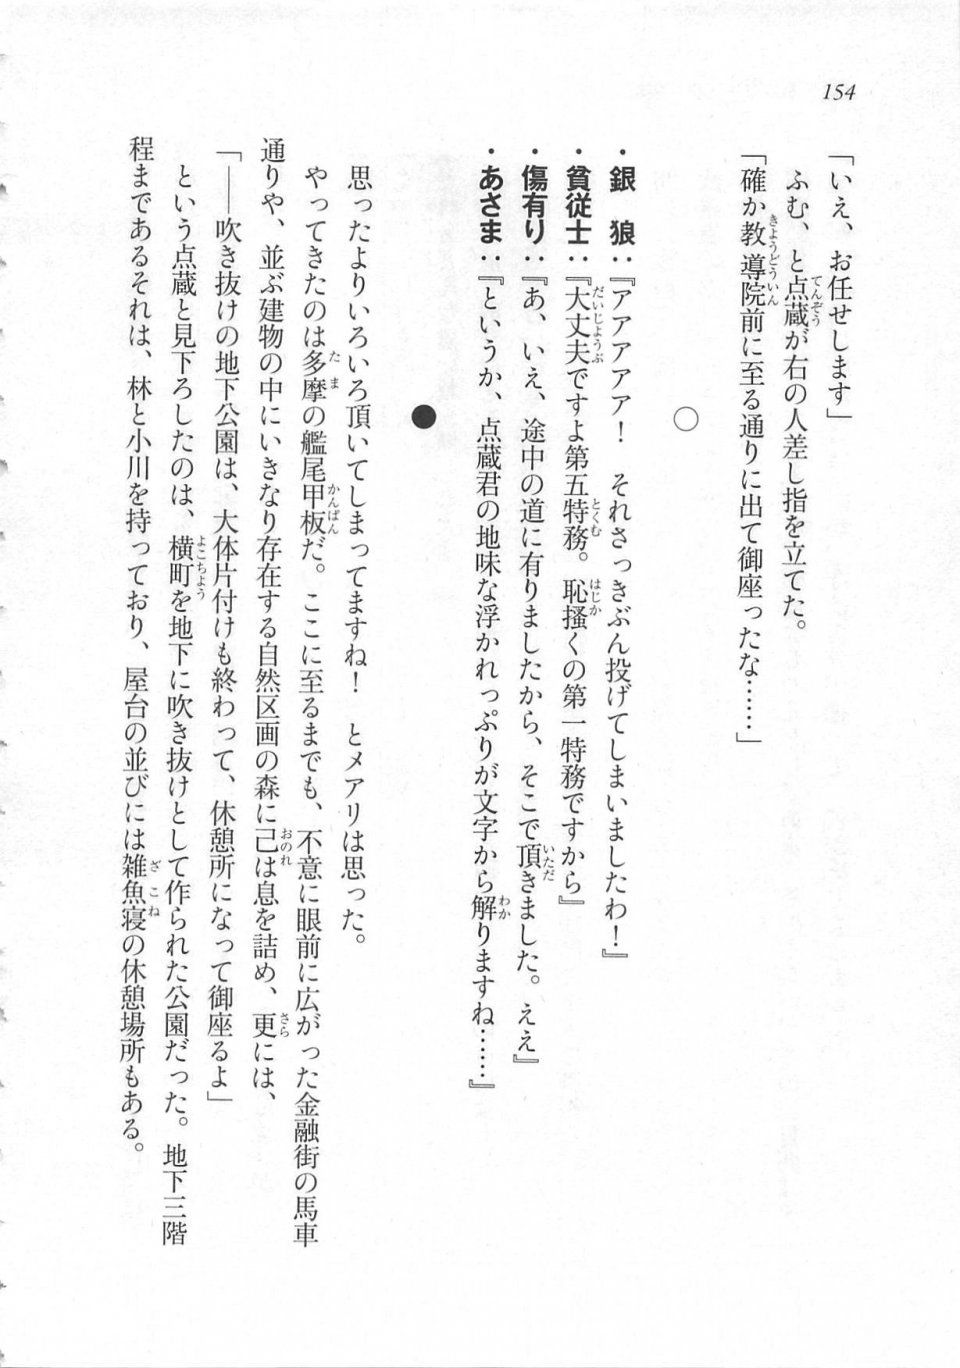 Kyoukai Senjou no Horizon LN Sidestory Vol 3 - Photo #158